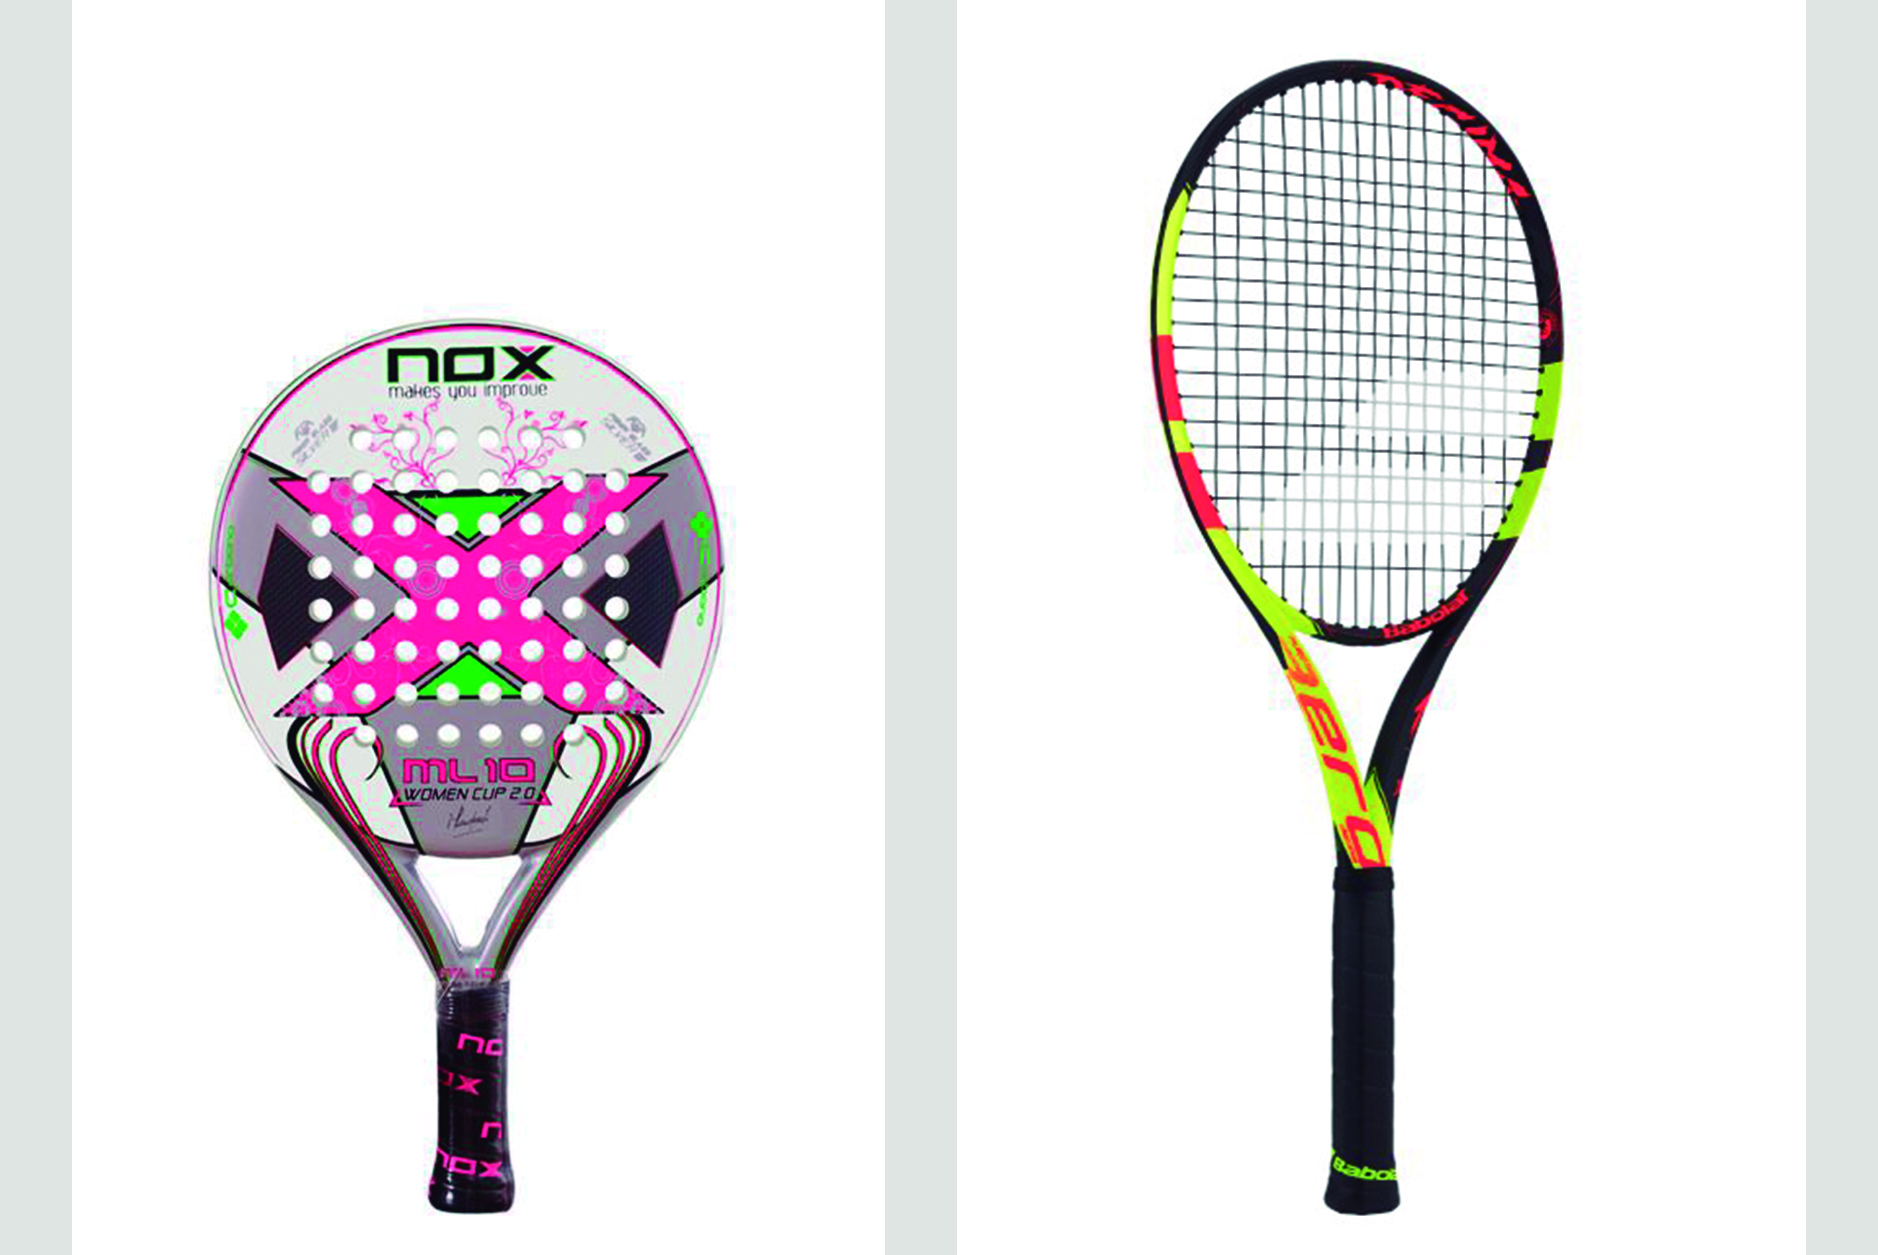 Diferencias entre el tenis y el pádel raqueta Diferencias entre el Tenis y el Pádel. Las 5 más importantes.